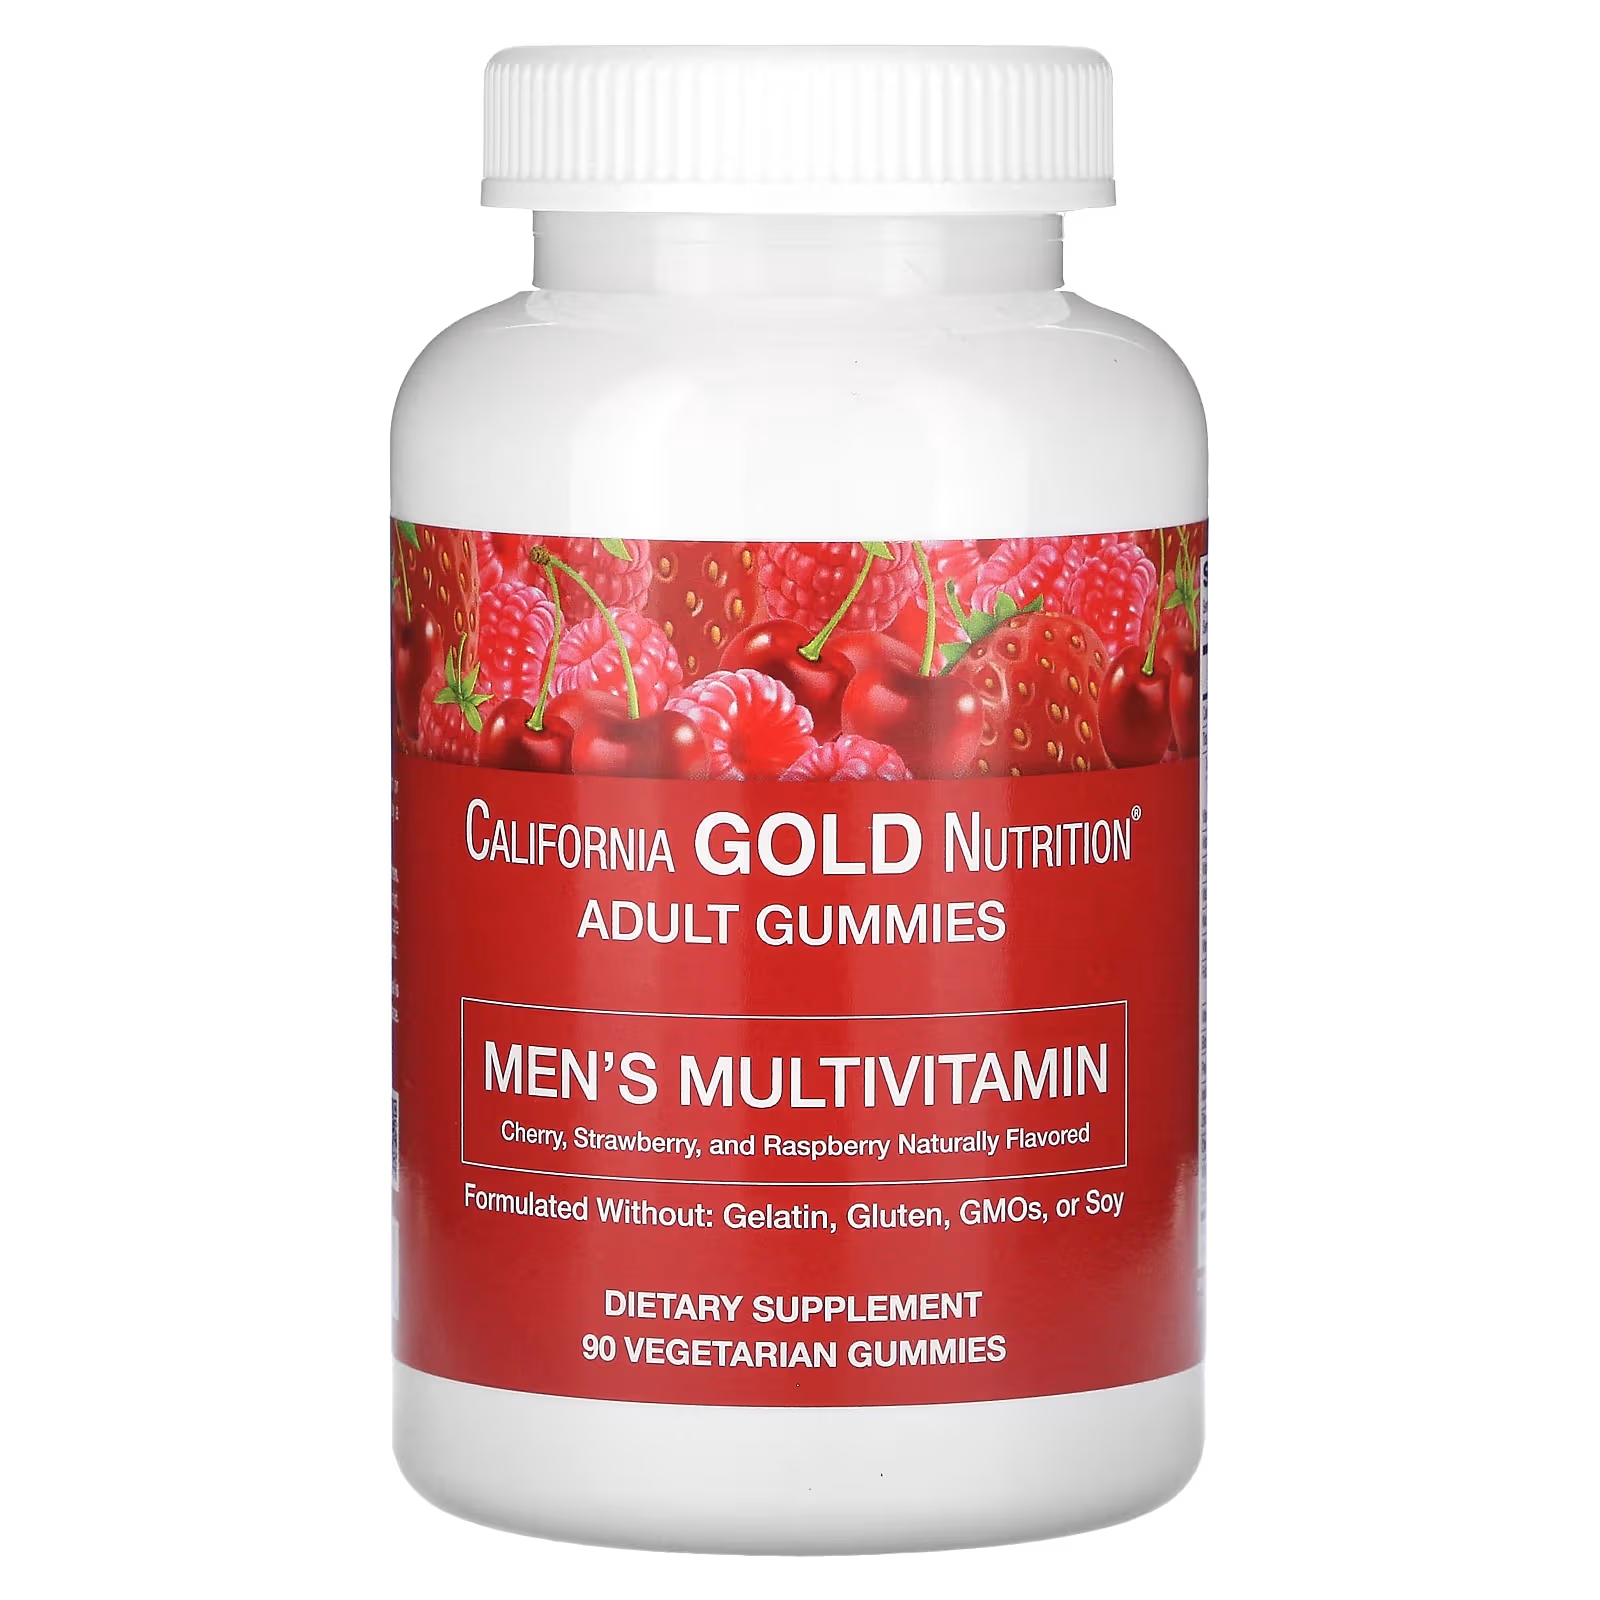 Мультивитаминные жевательные конфеты для мужчин California Gold Nutrition со смешанным ягодно-фруктовым вкусом, 90 жевательных конфет